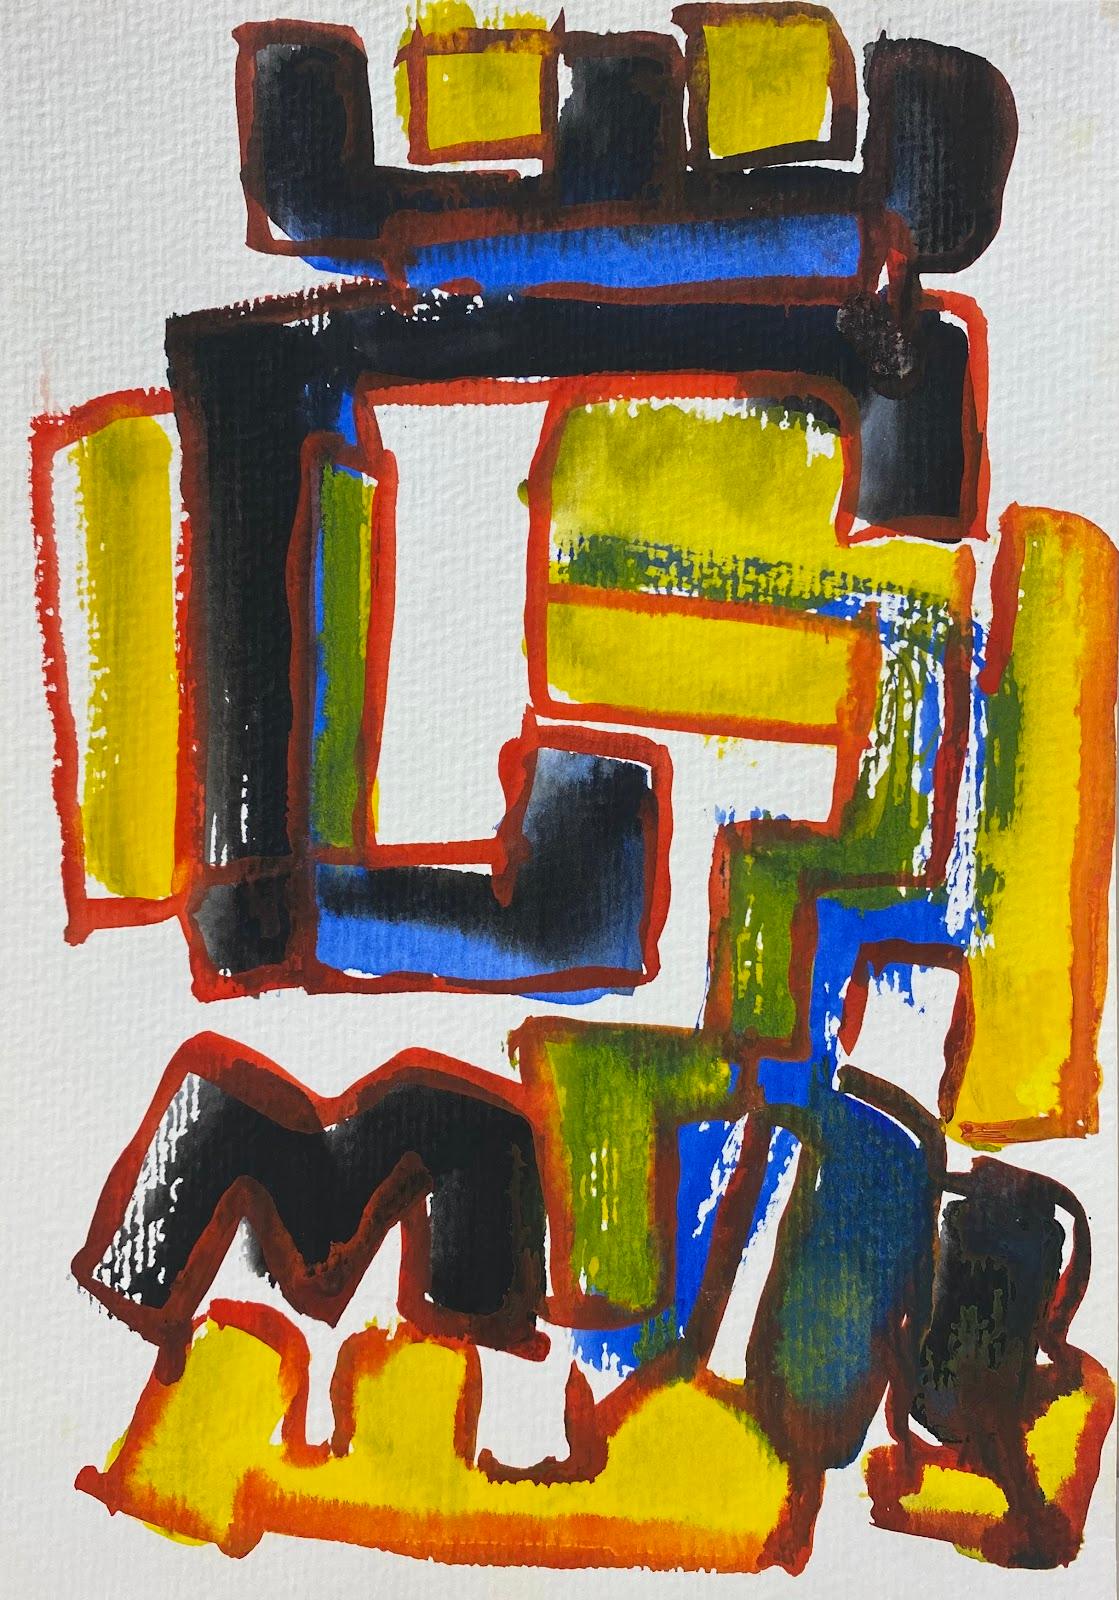 Abstract Drawing Jacques Coulais (1955-2011) - Expressionniste français - Peinture abstraite originale - Artiste - Provenance de l'atelier